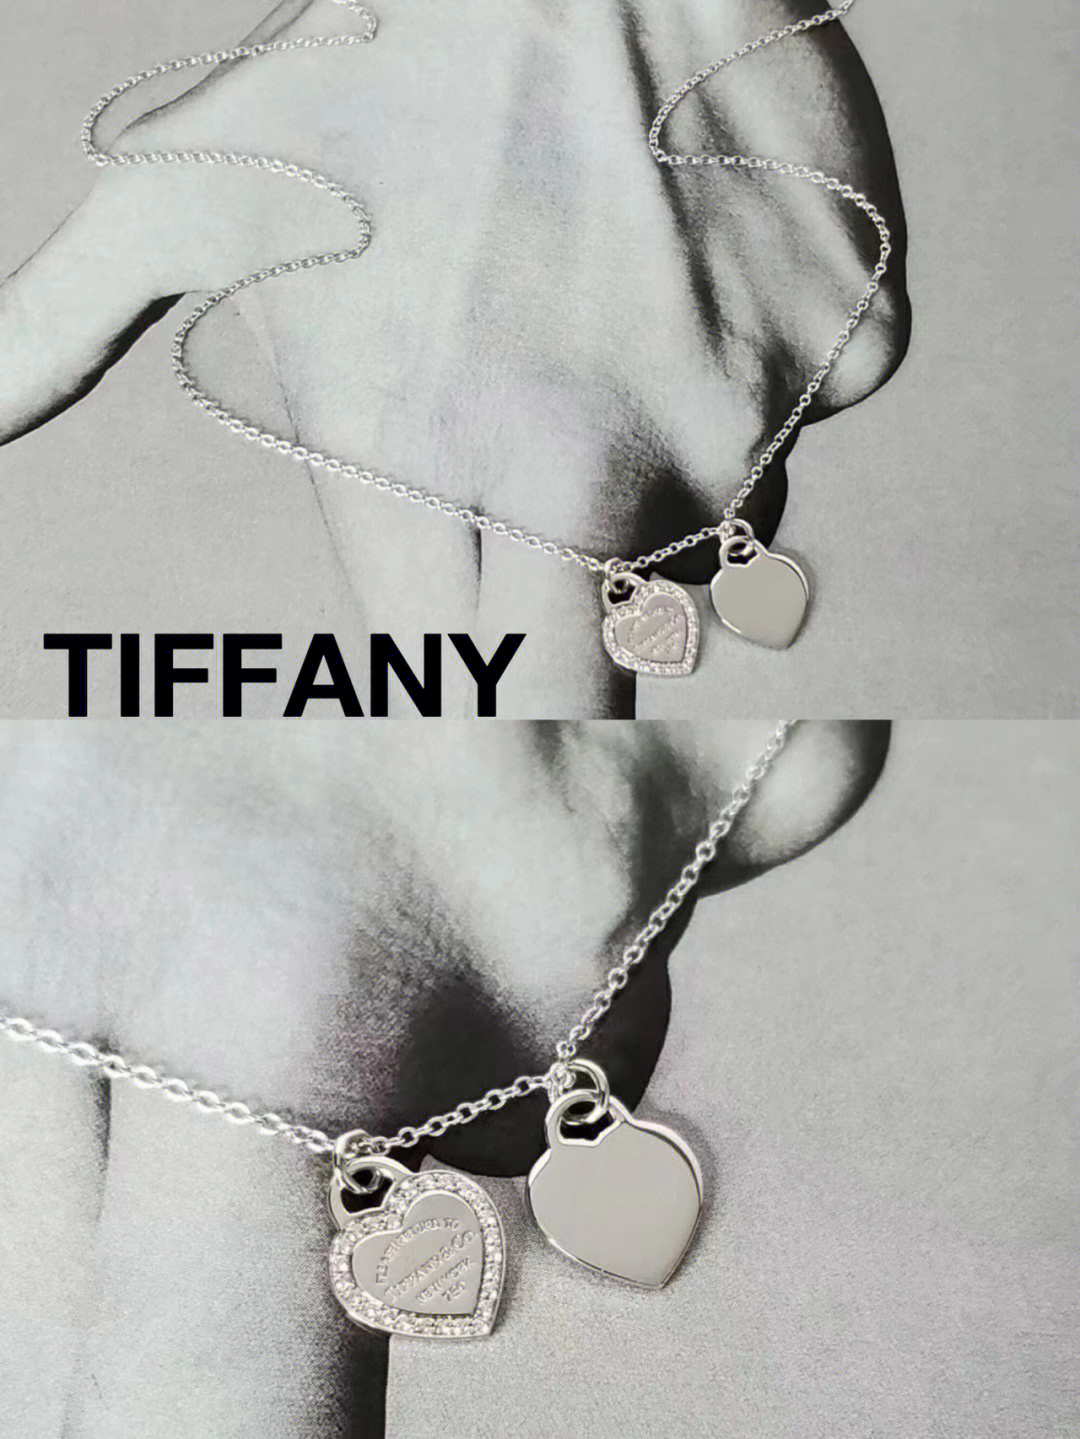 tiffany双环项链真假图片